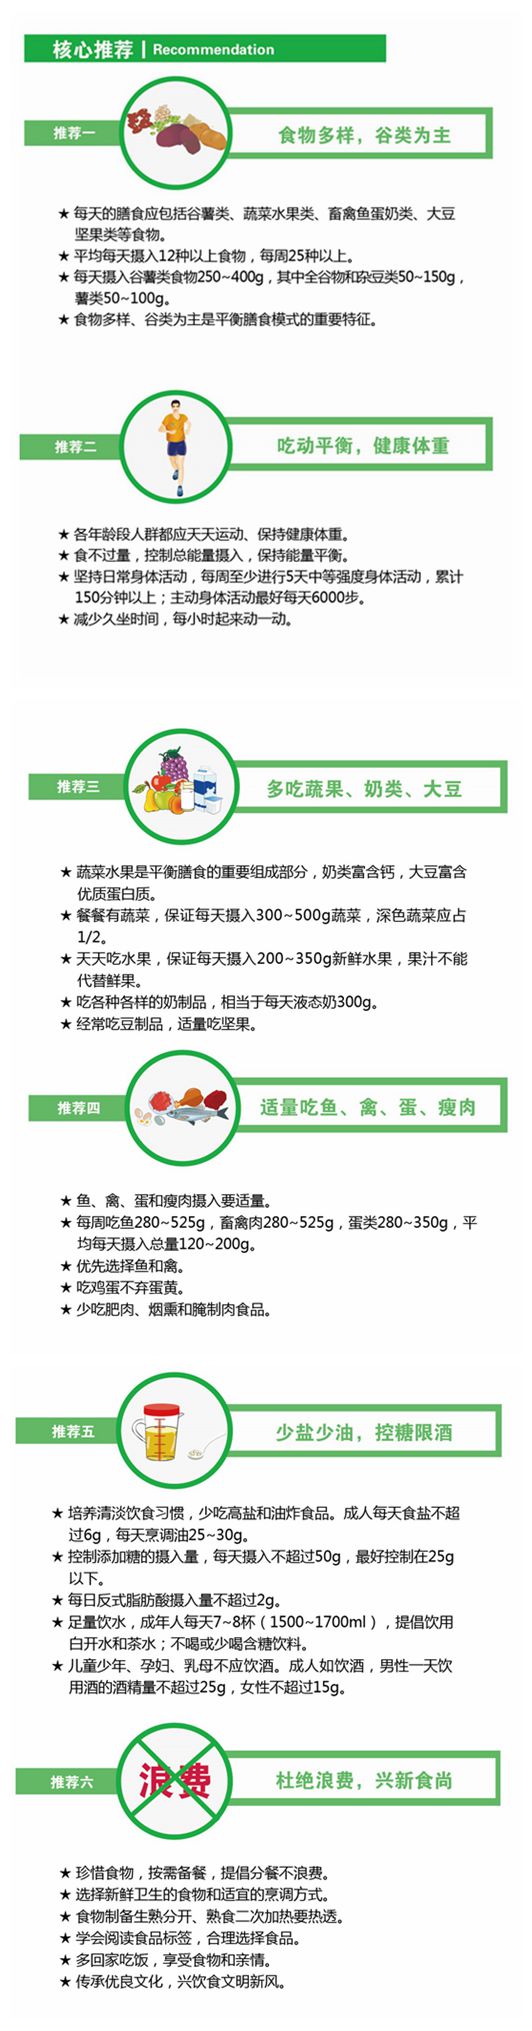 《中国居民膳食指南》（2016）折页-02_副本.jpg